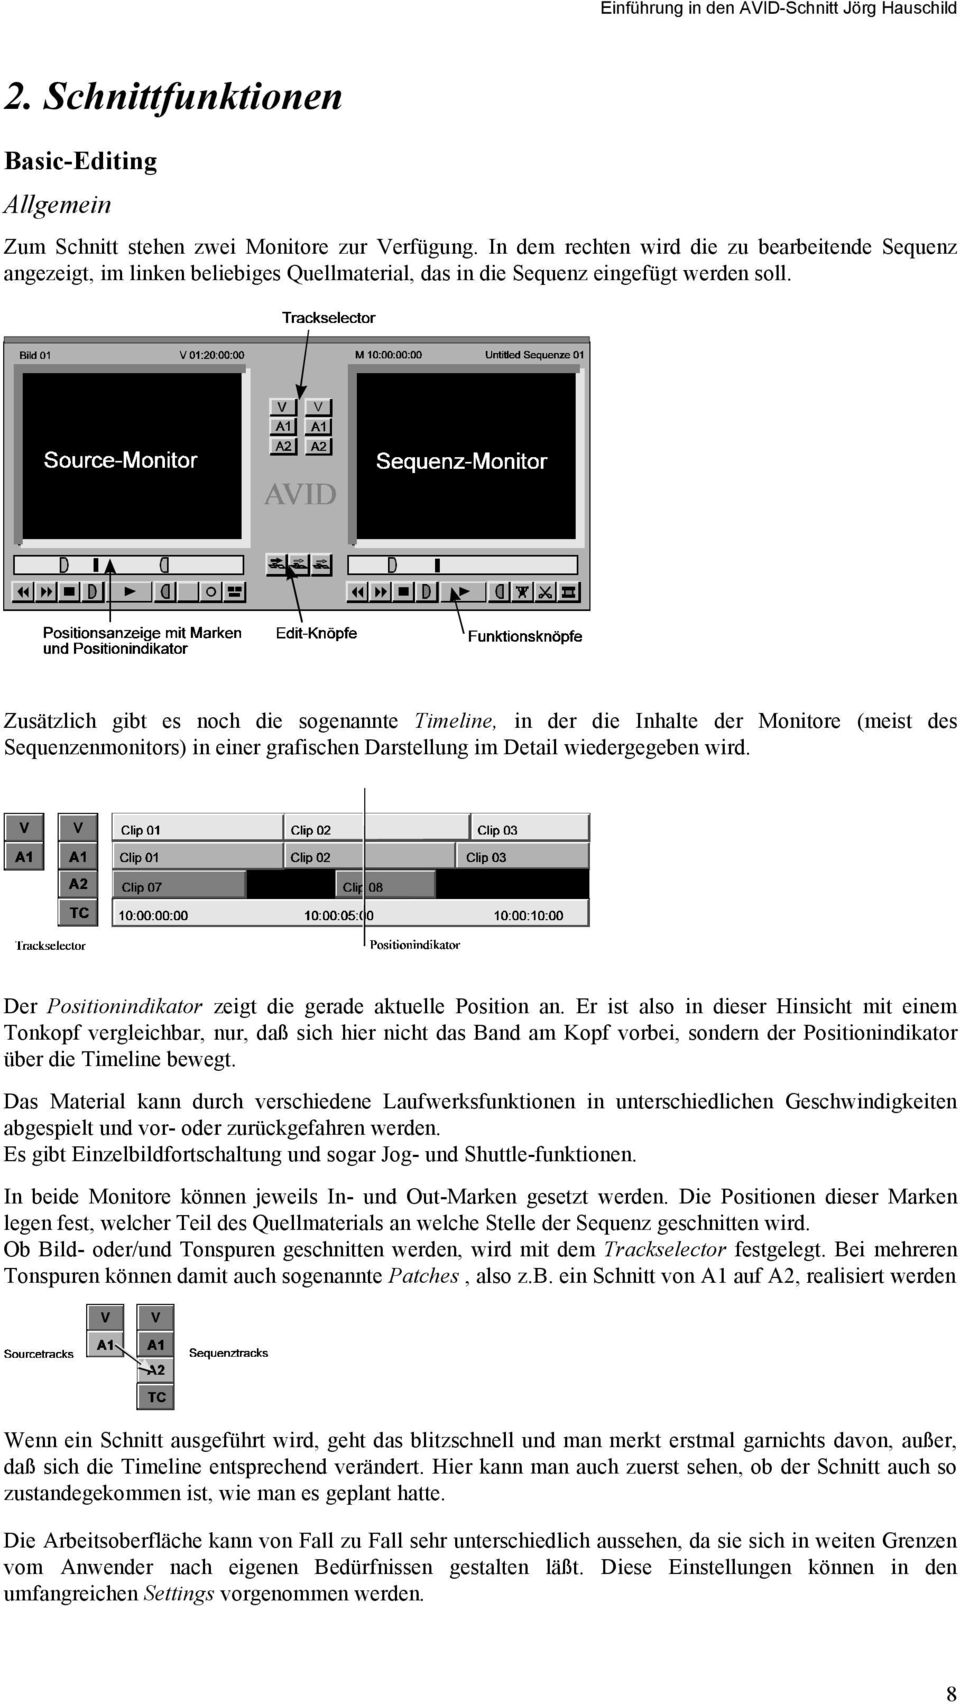 Zusätzlich gibt es noch die sogenannte Timeline, in der die Inhalte der Monitore (meist des Sequenzenmonitors) in einer grafischen Darstellung im Detail wiedergegeben wird.